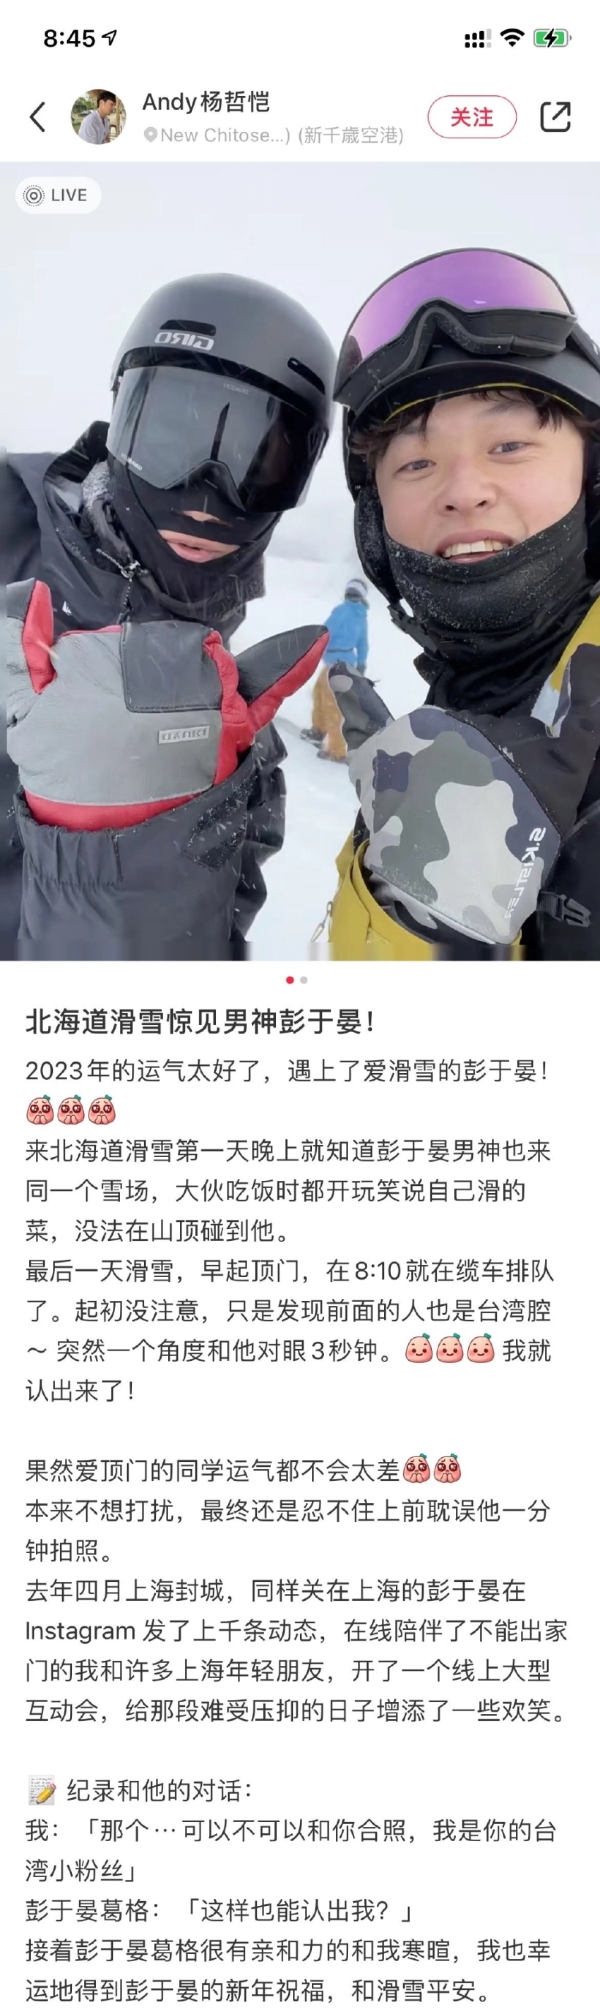 彭于晏北海道滑雪被偶遇 穿戴全套装备还是被认出